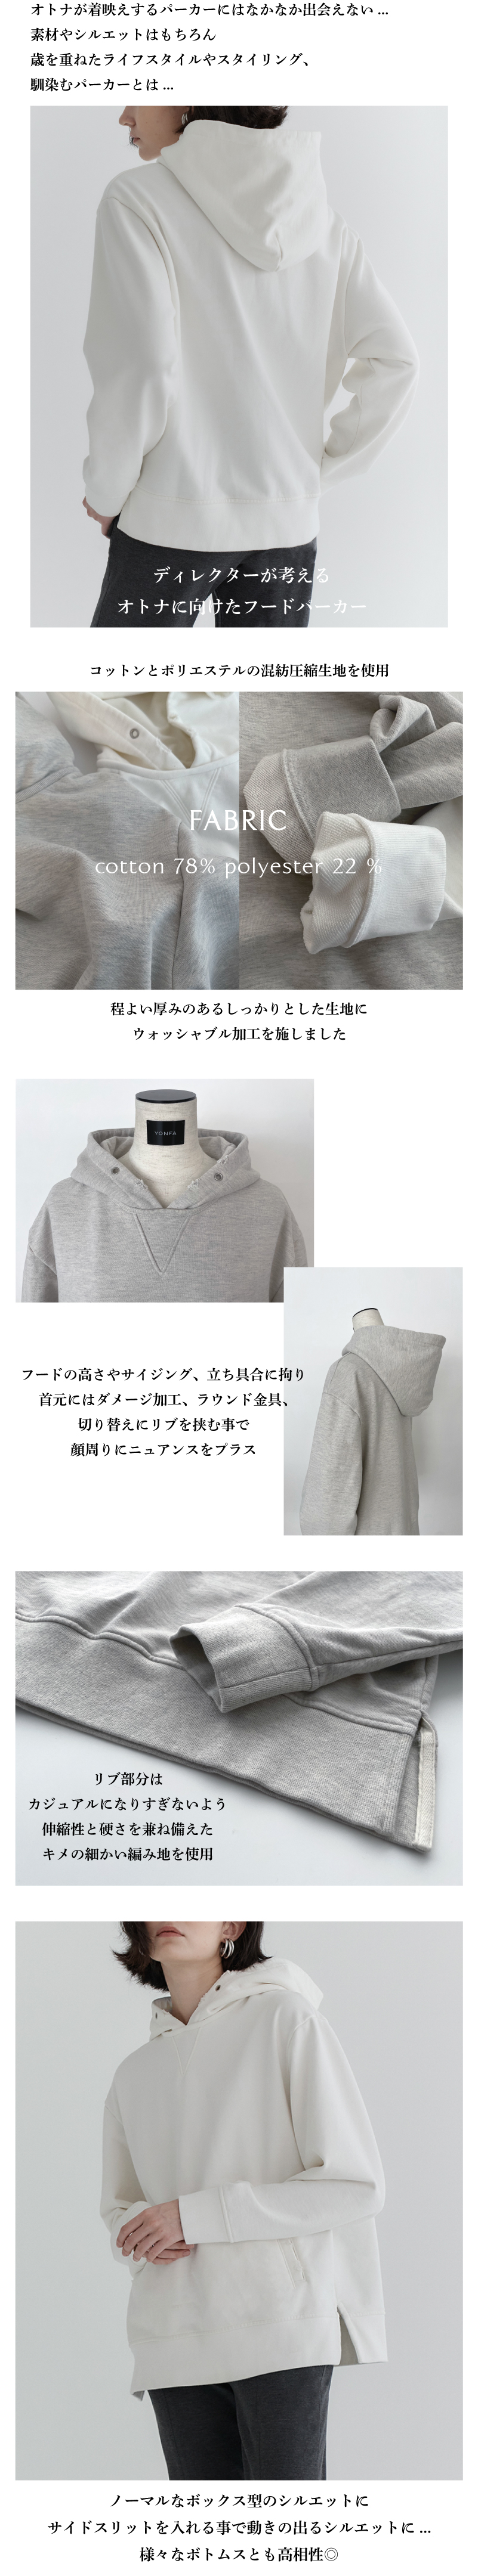 yonfa ルーズパーカー (gray)